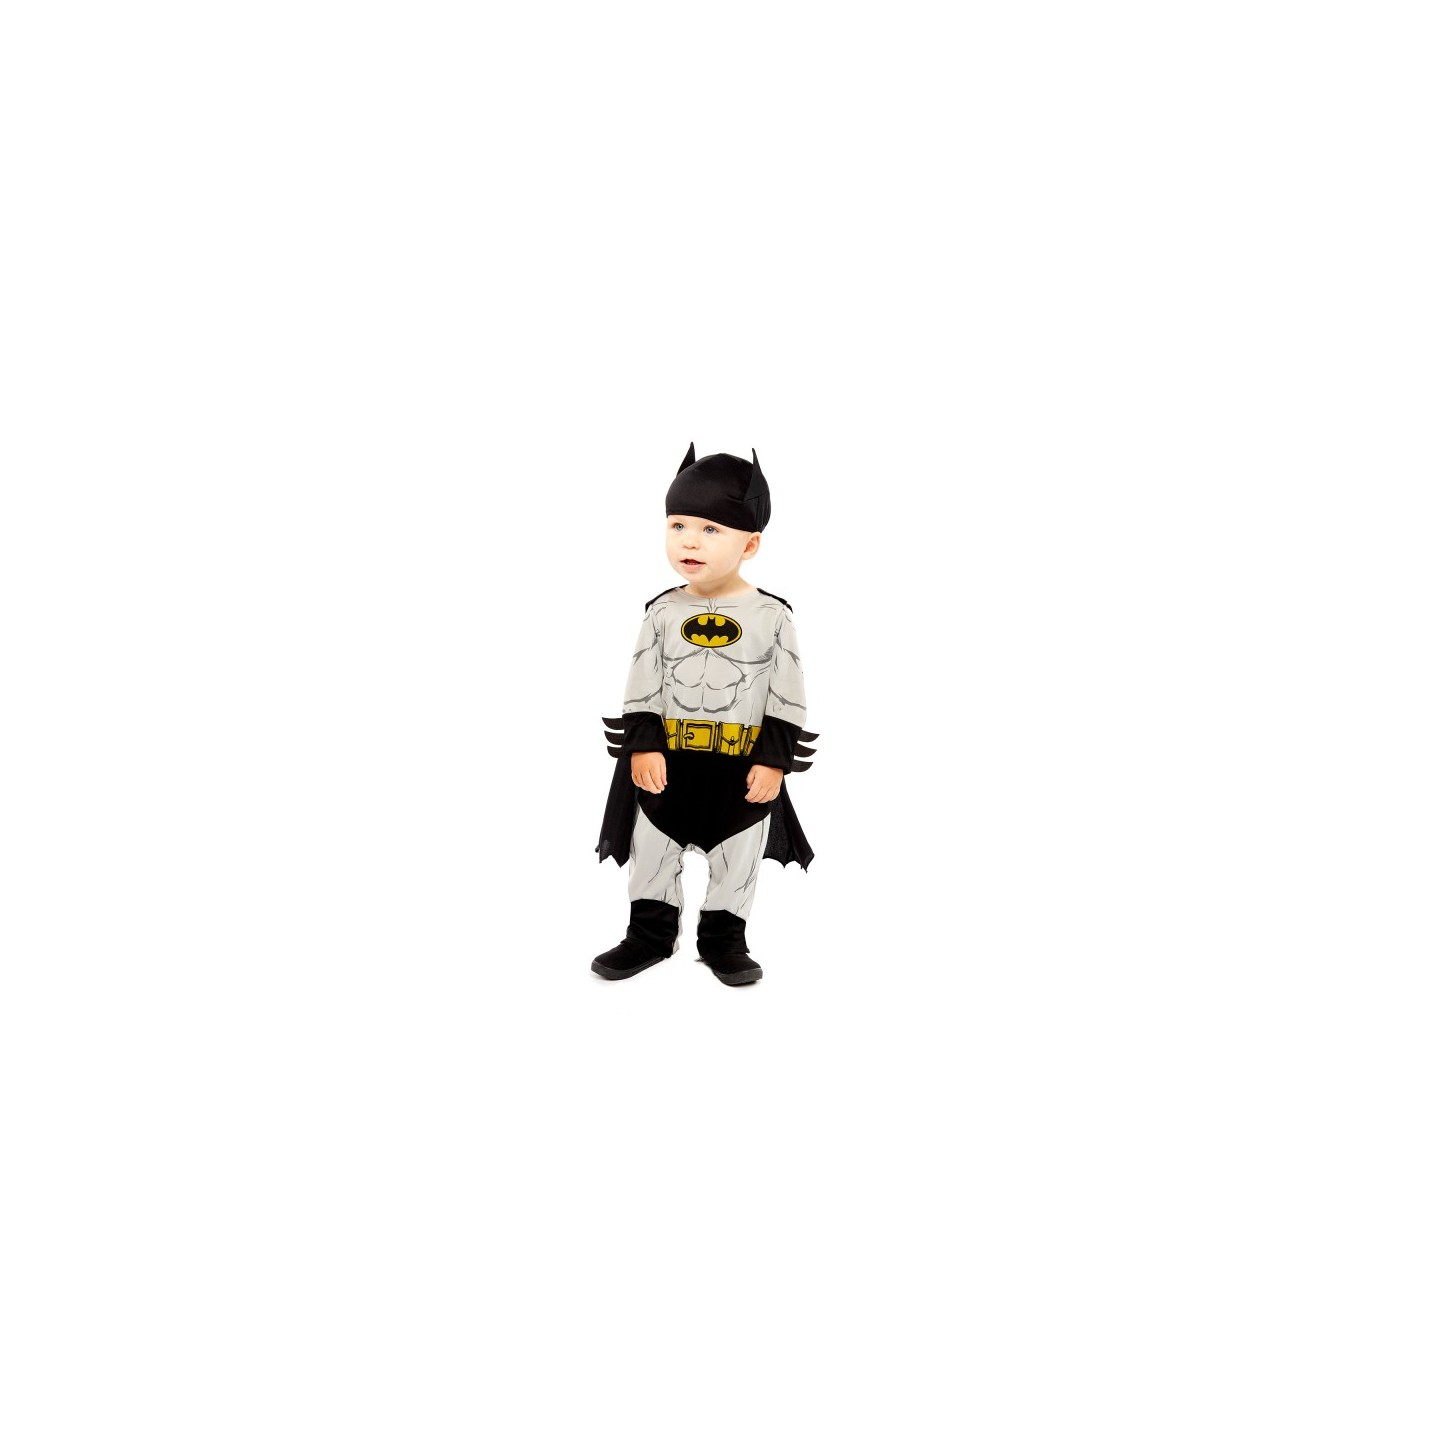 chrysant Onzeker bedelaar Batman baby carnaval kostuum | Jokershop.be - Verkleedkleding